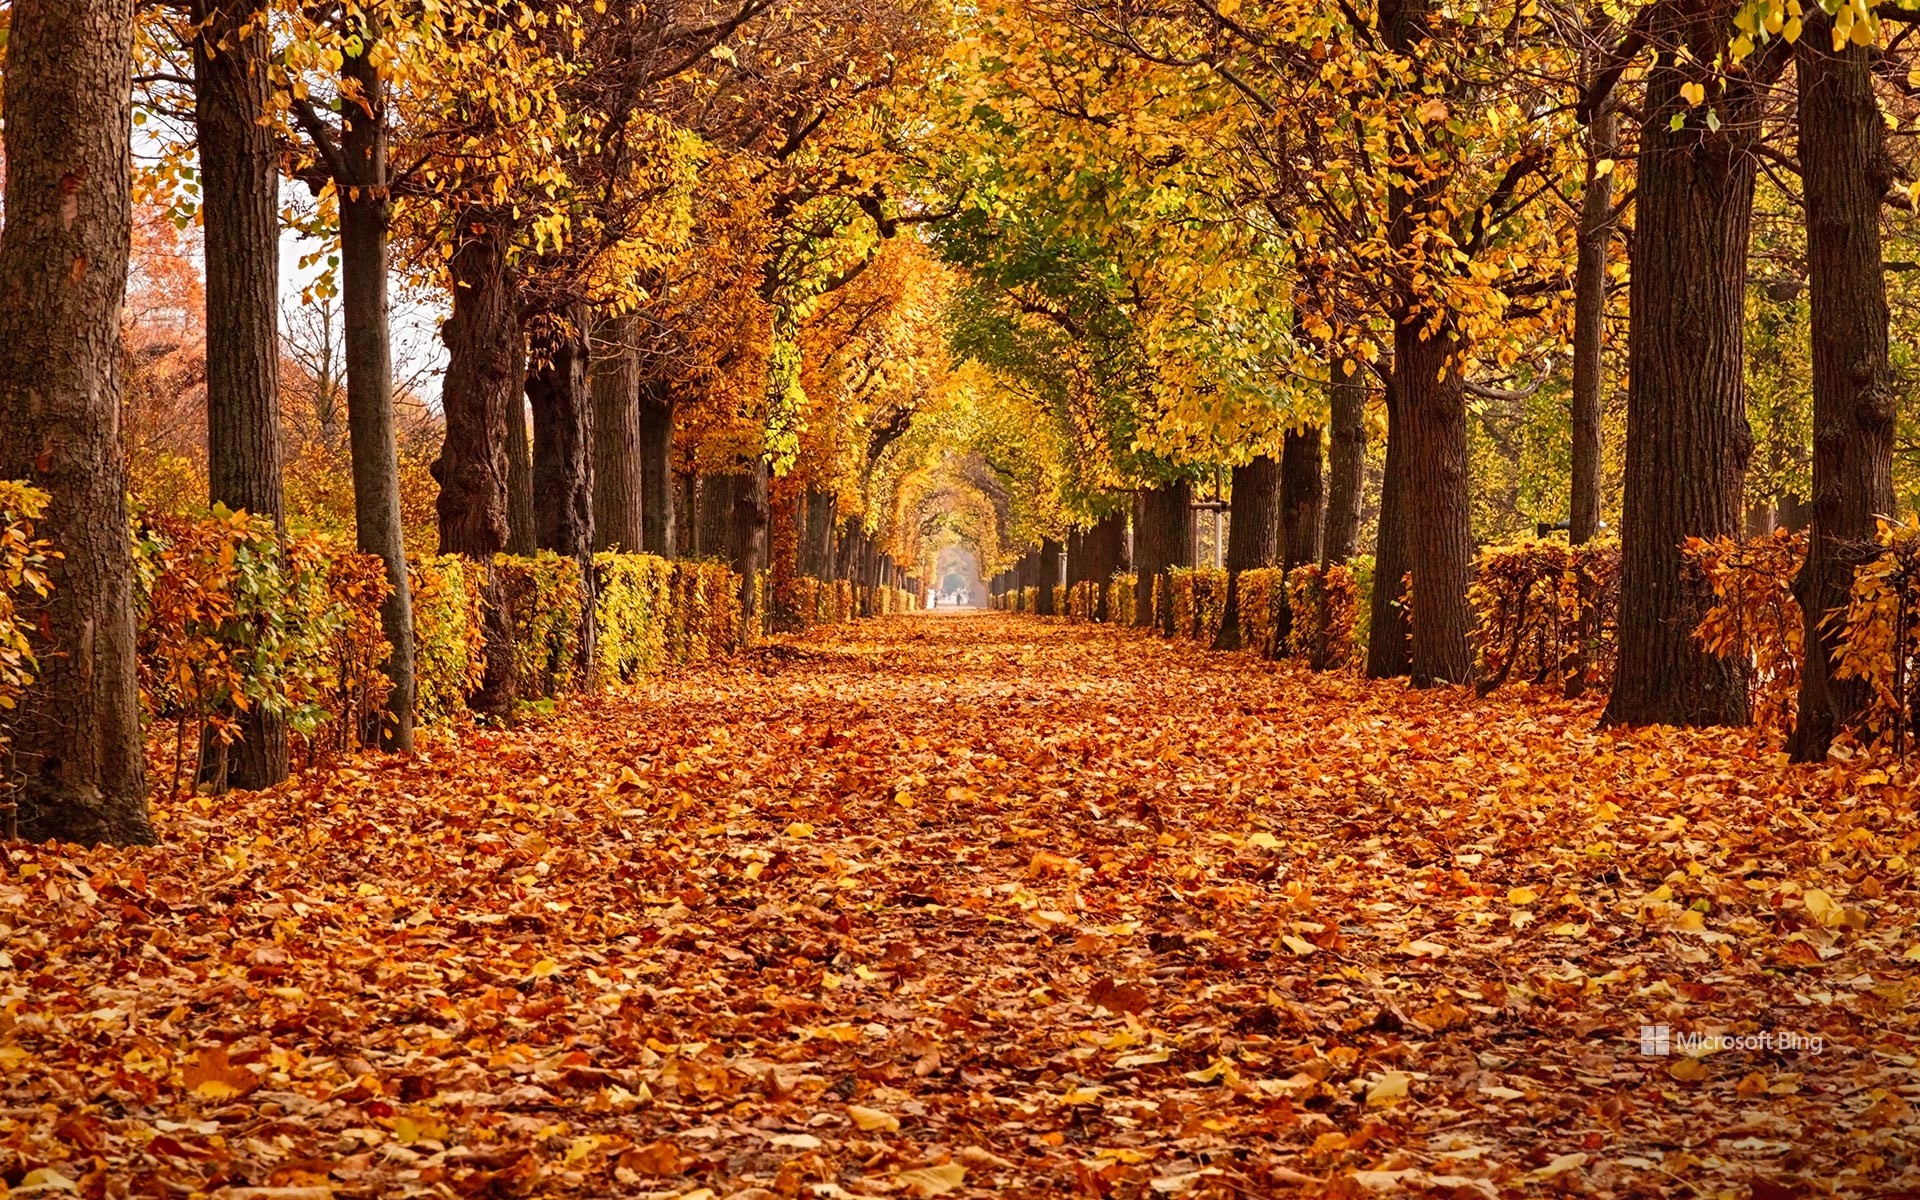 Autumn foliage in Schönbrunn Palace Park, Vienna, Austria